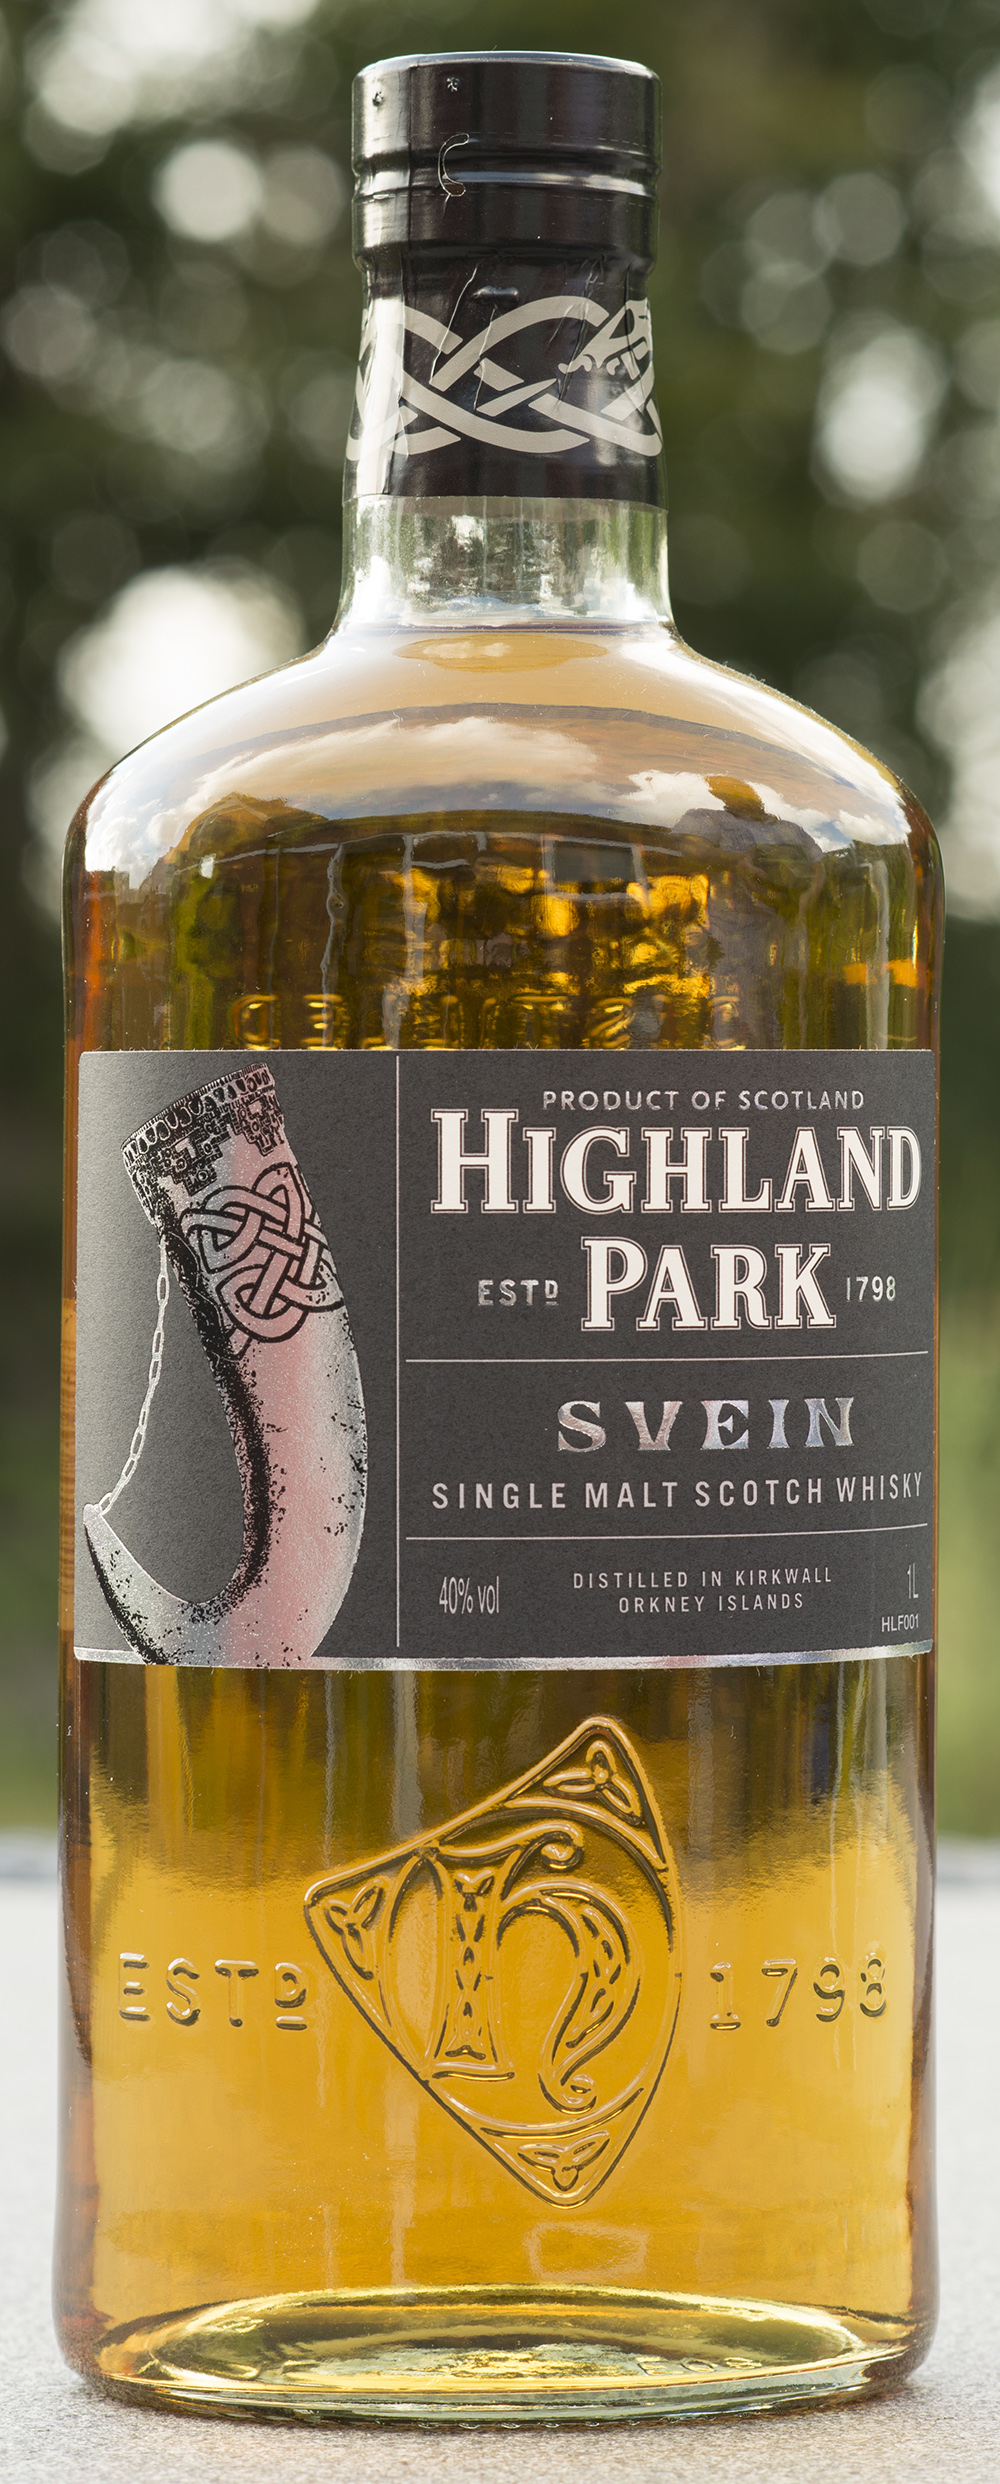 Billede: DSC_3333 Highland Park - Svein - bottle front.jpg